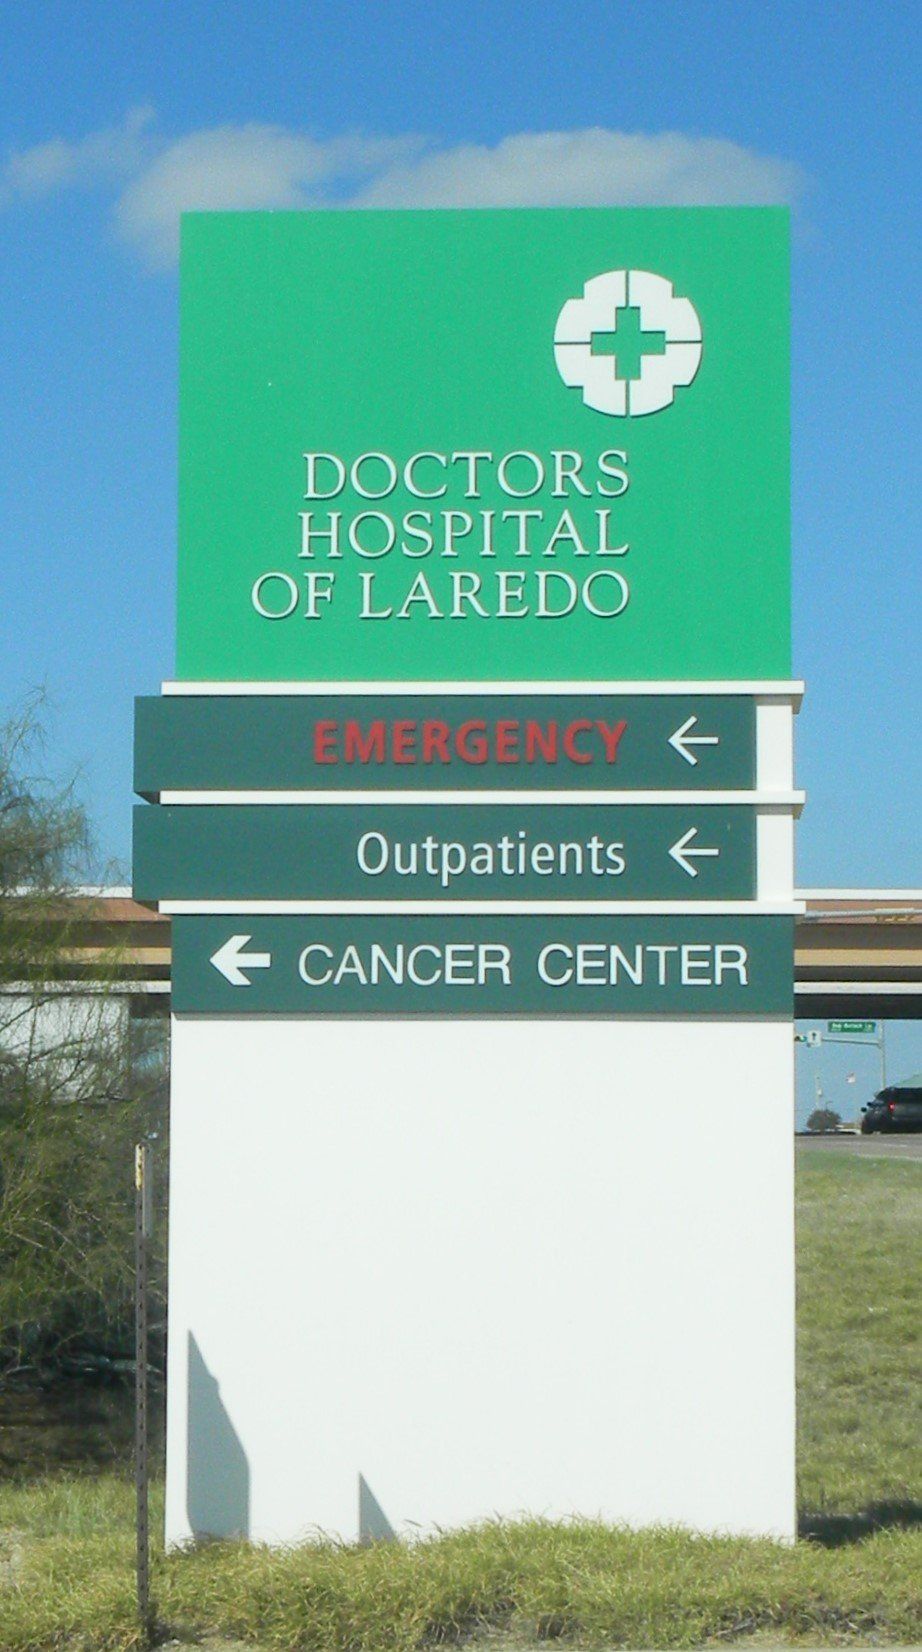 Commercial Signage — Doctors Hospital of Laredo Signage  in Laredo, TX